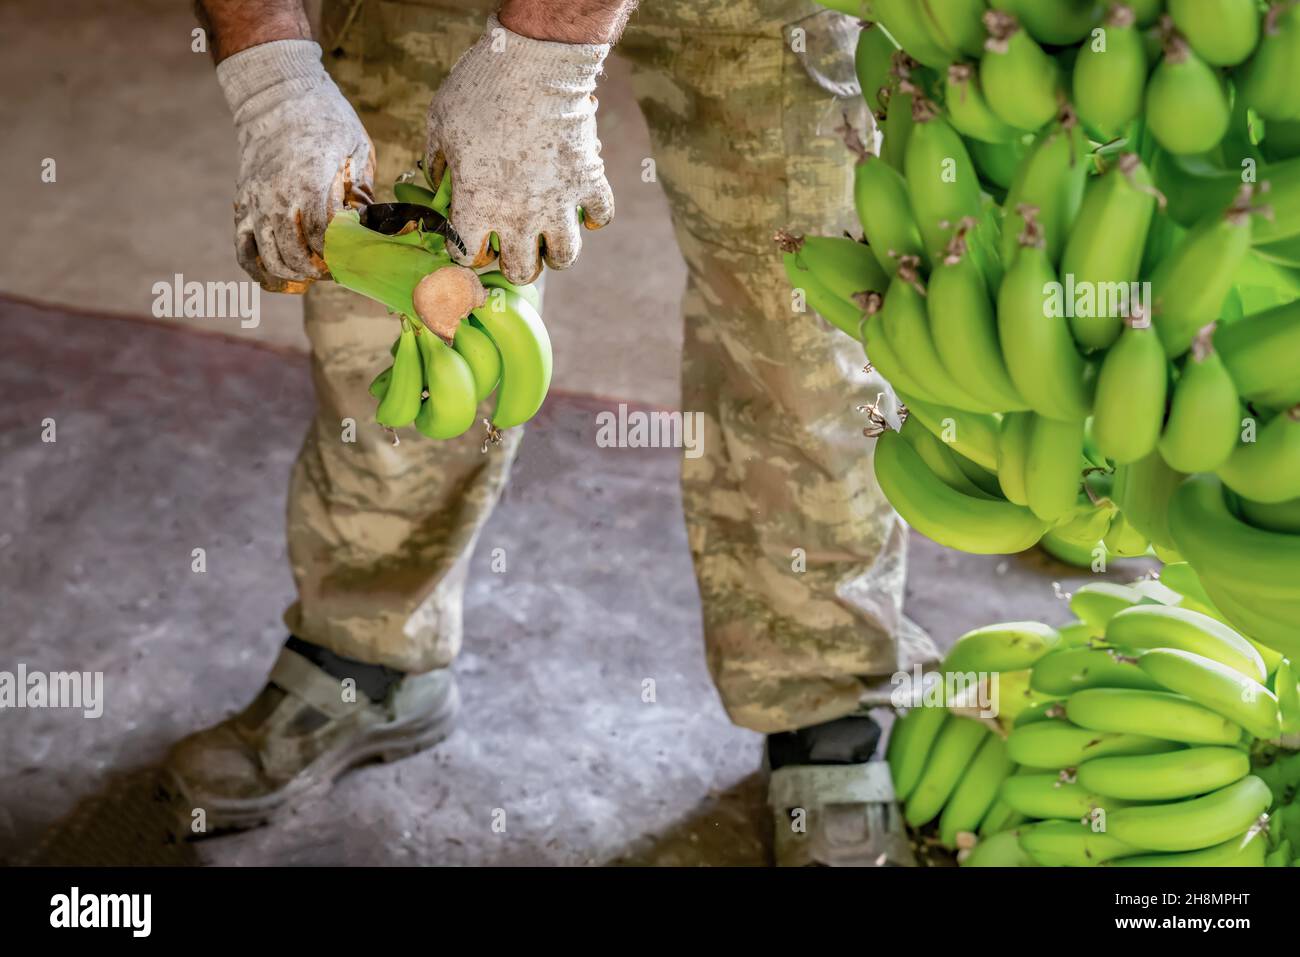 Mann in Arbeitshandschuhen Arten von grünen Bananen. Vorbereitung von Bananen für den Großhandel.. Nahaufnahme. Stockfoto